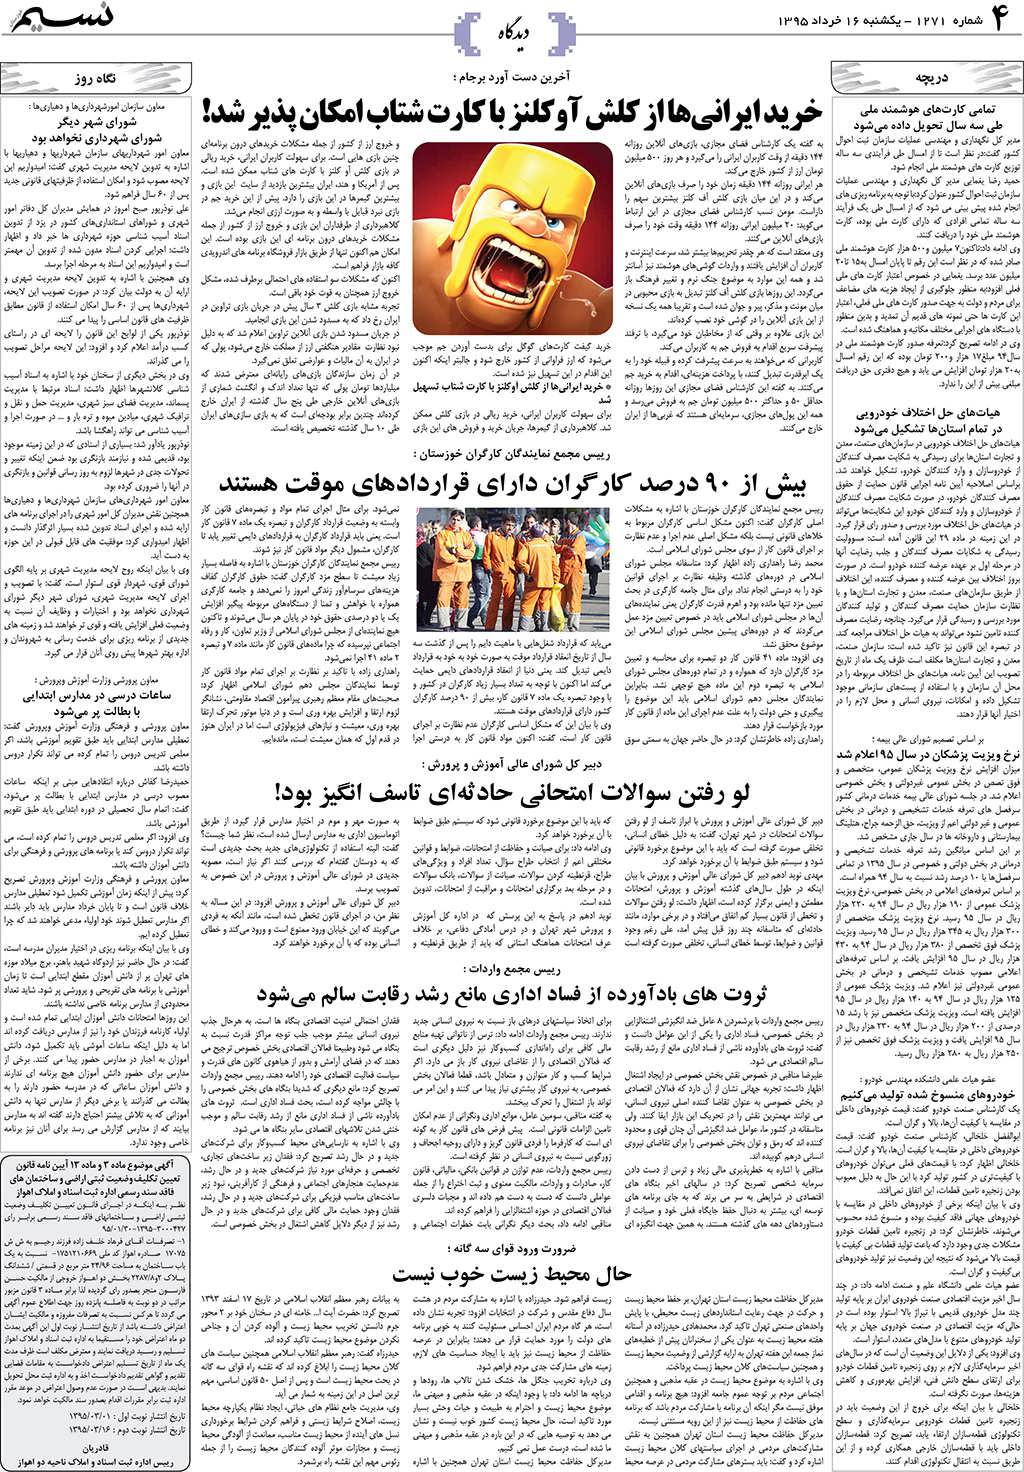 صفحه دیدگاه روزنامه نسیم شماره 1271